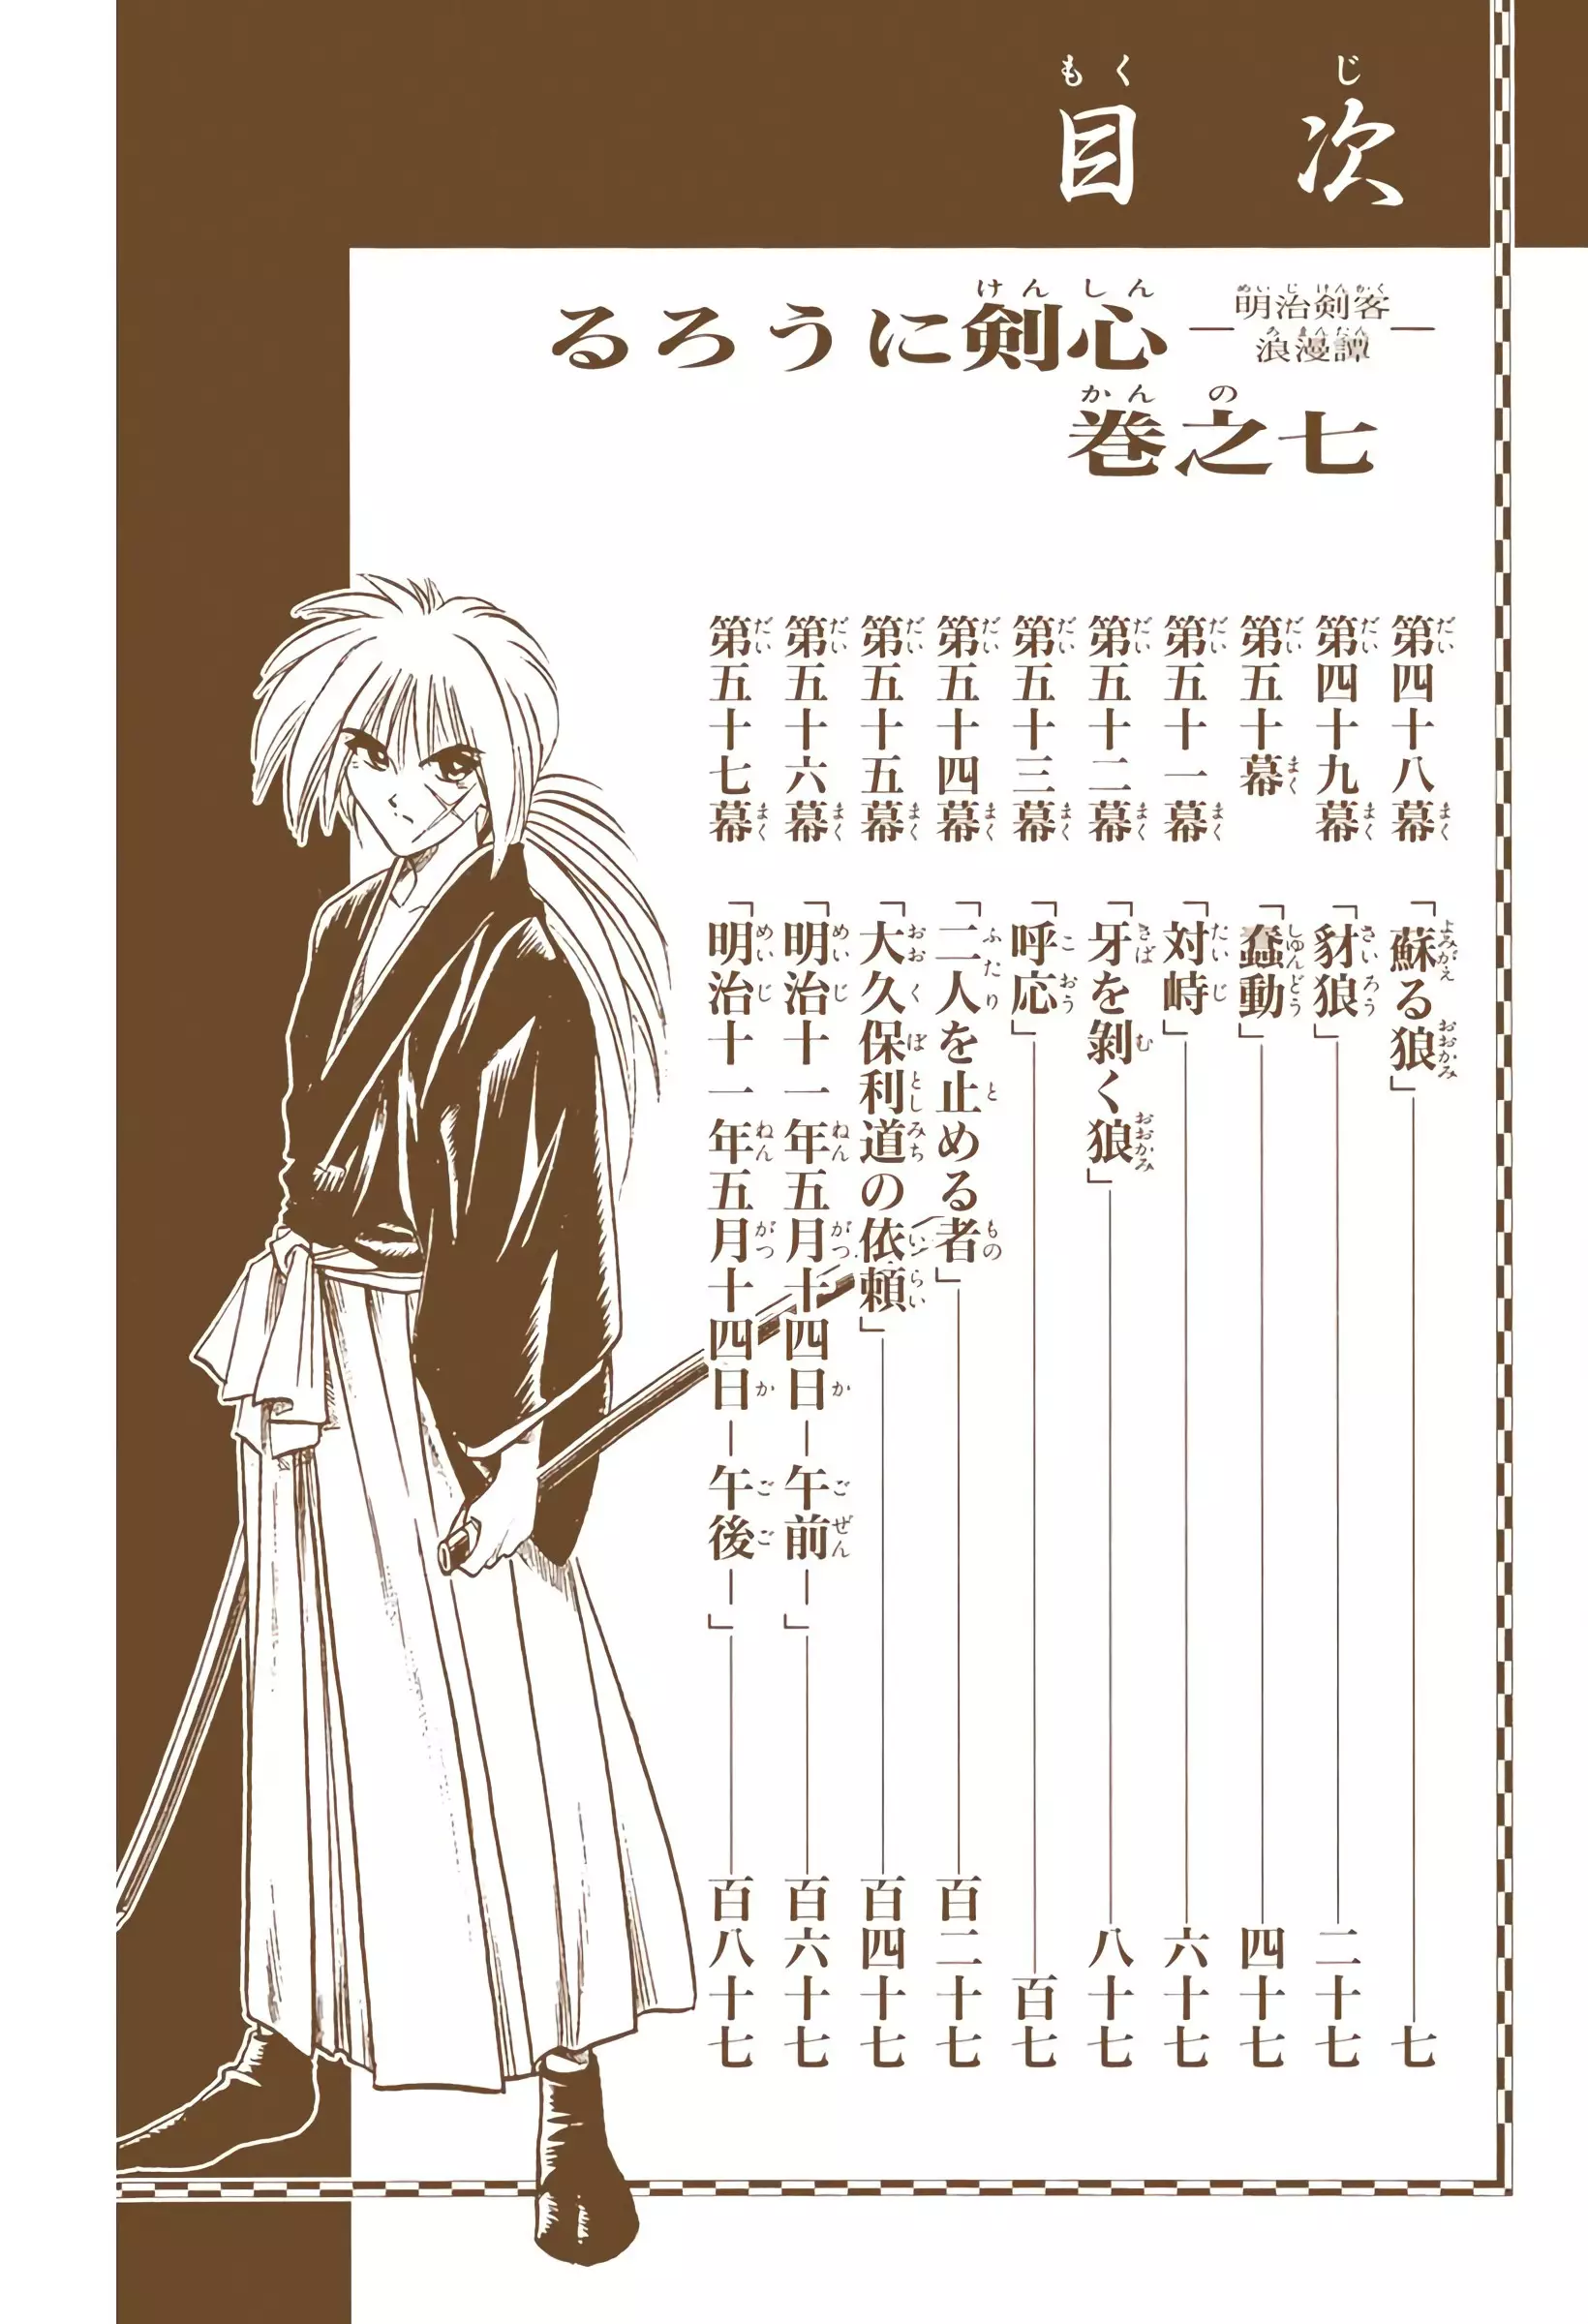 Rurouni Kenshin: Meiji Kenkaku Romantan - Digital Colored Comics - 48 page 5-9f2c3c6c